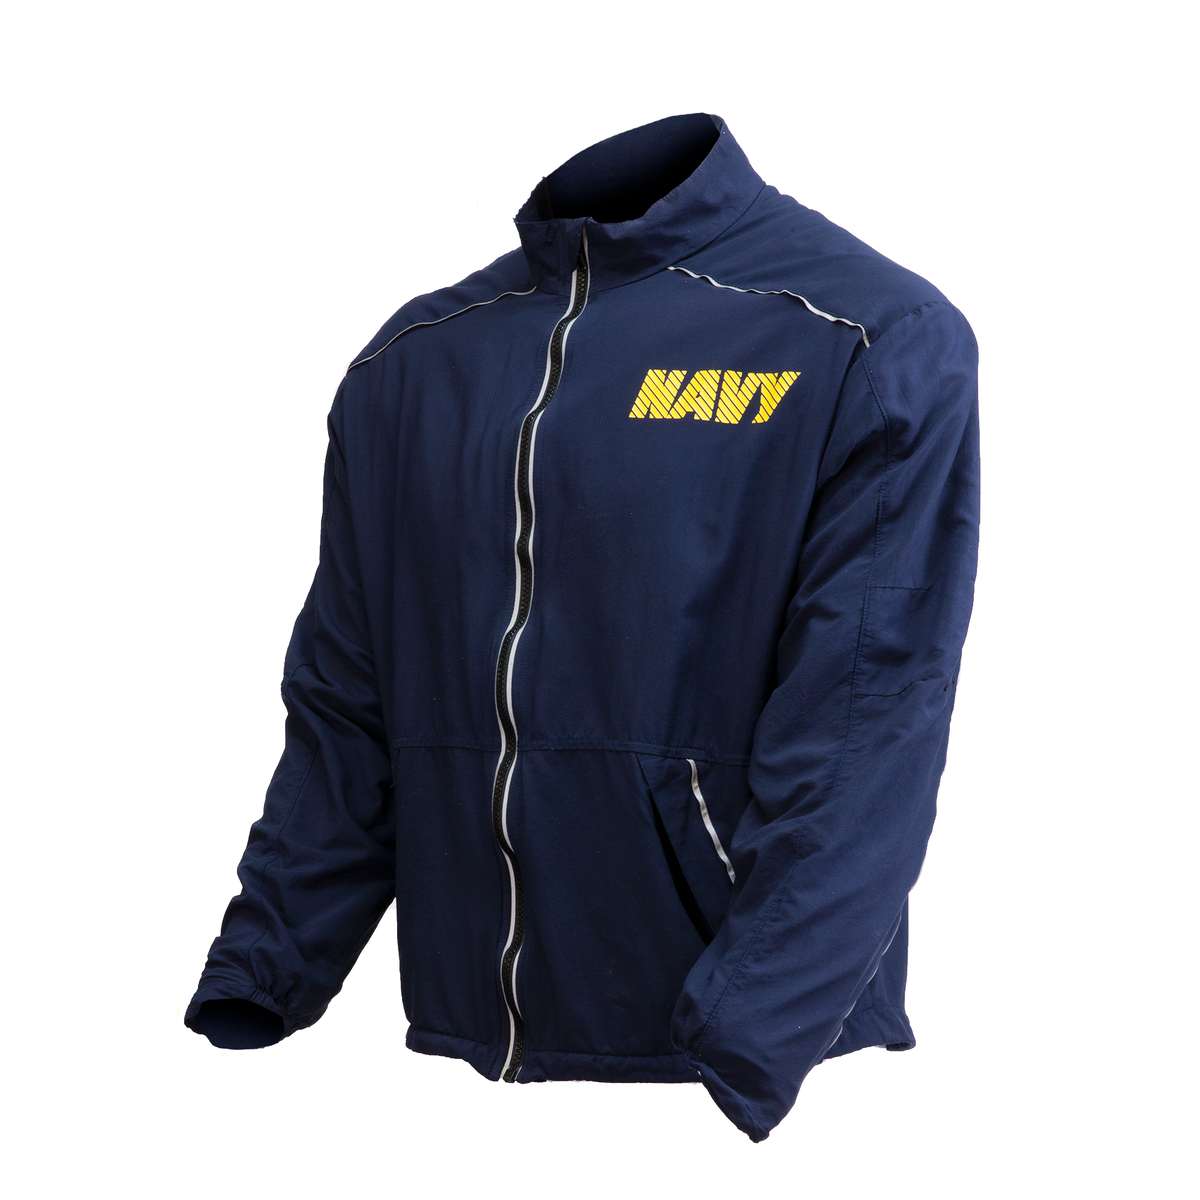 NAVY Physical Fitness Jacket | Uniform Trading Company